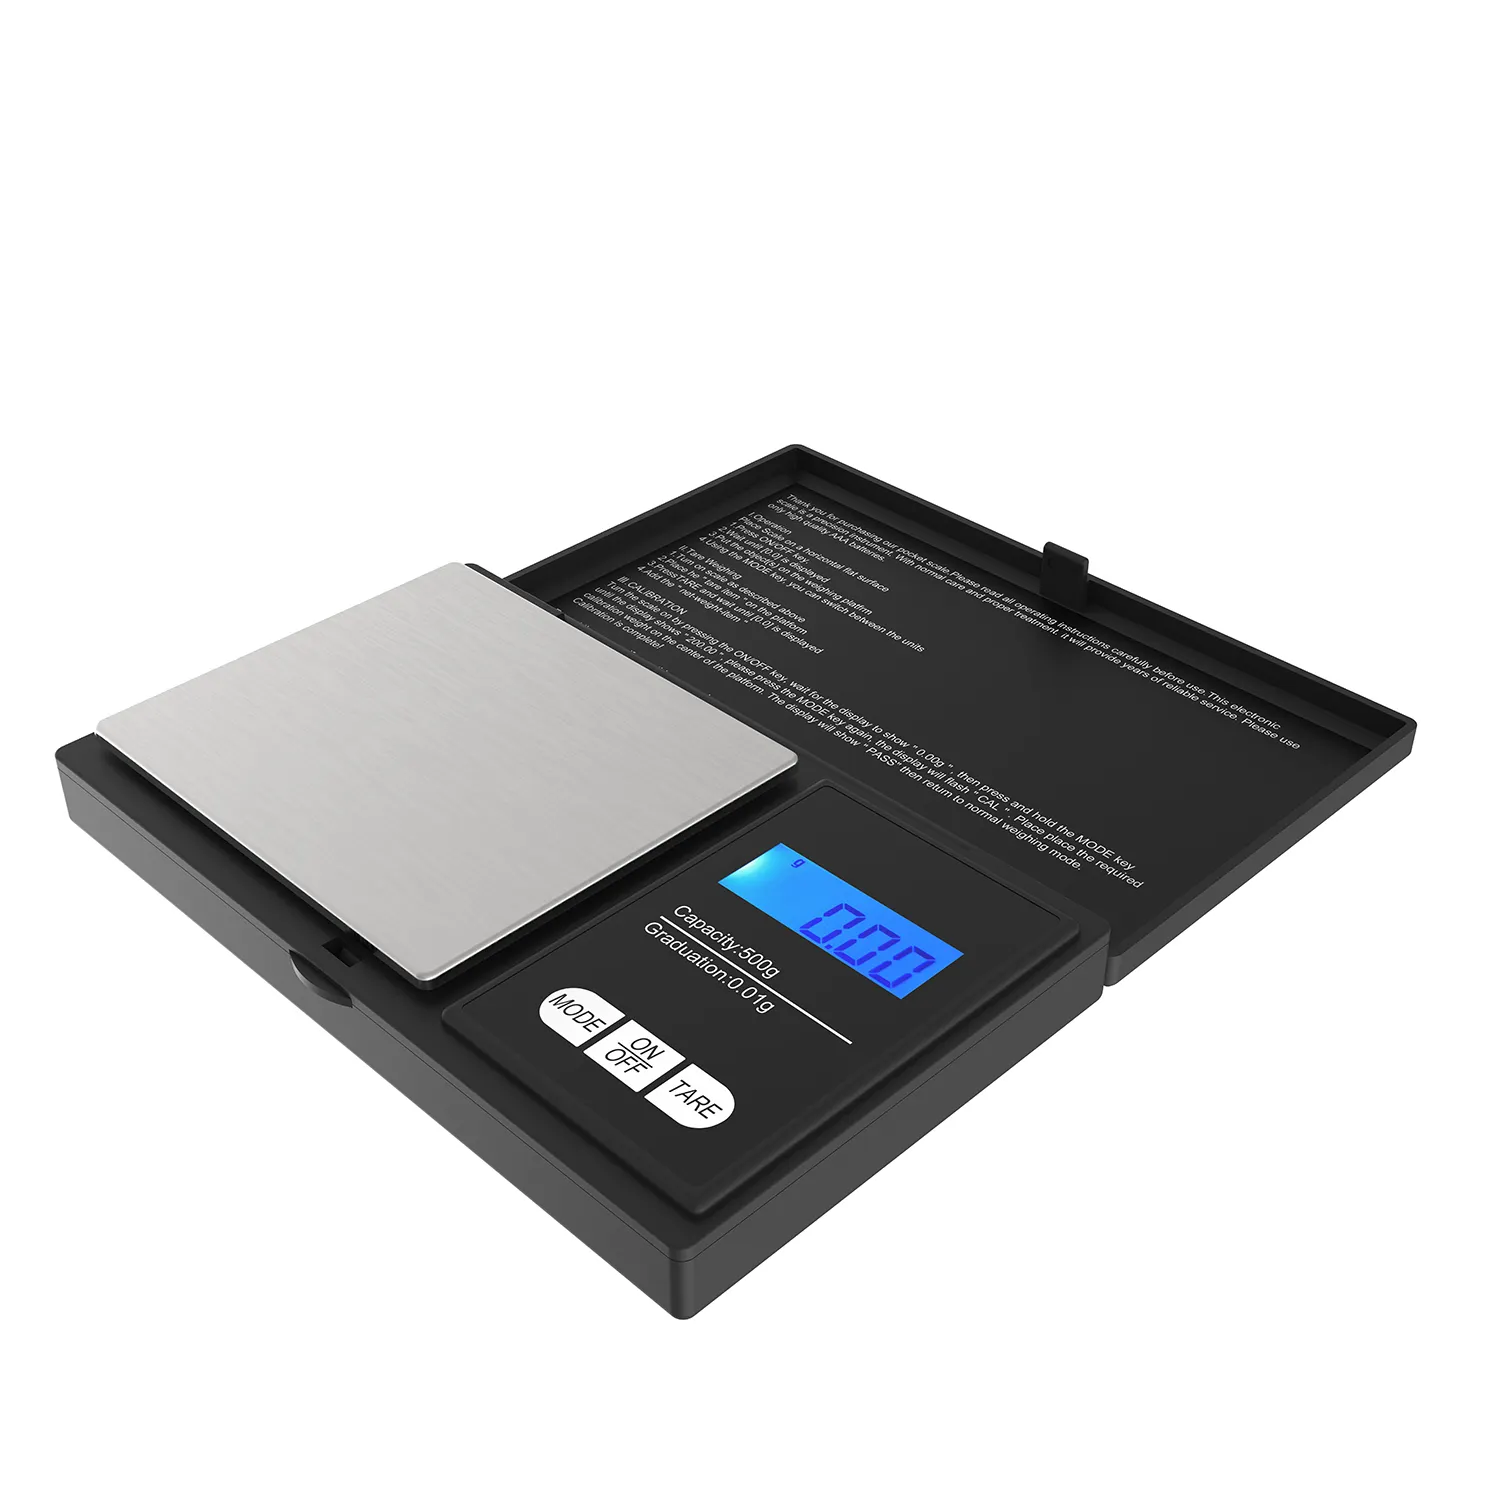 Mini balança digital de bolso 0.1g/0.01g, mini balança eletrônica de bolso, joia, pilhas lcd aa 0.1g/0.01g